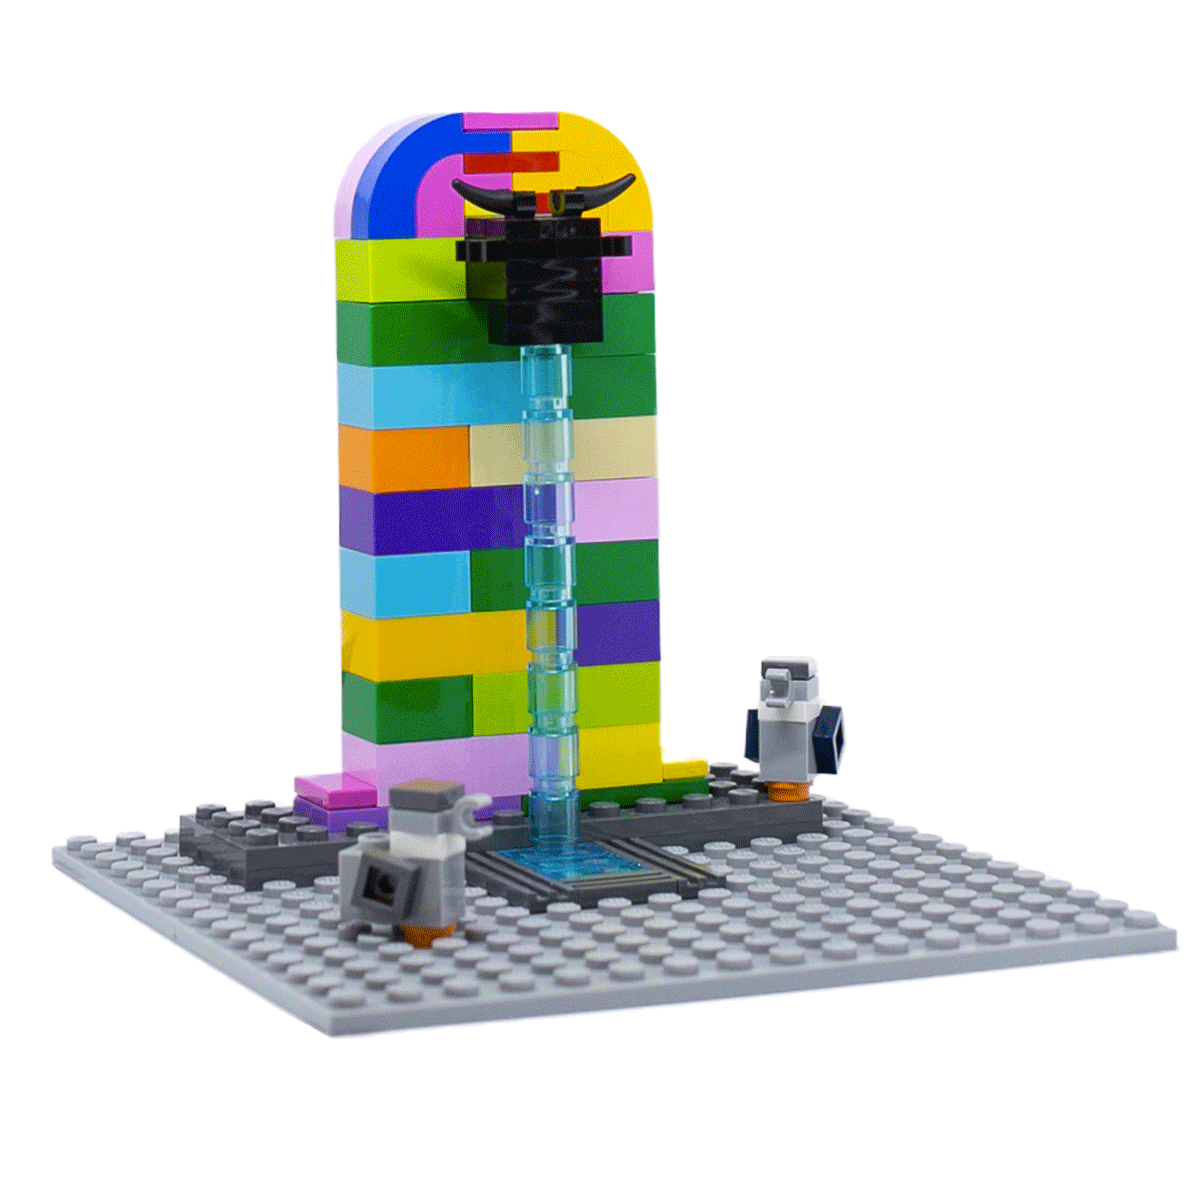 Brick-et arcobaleno